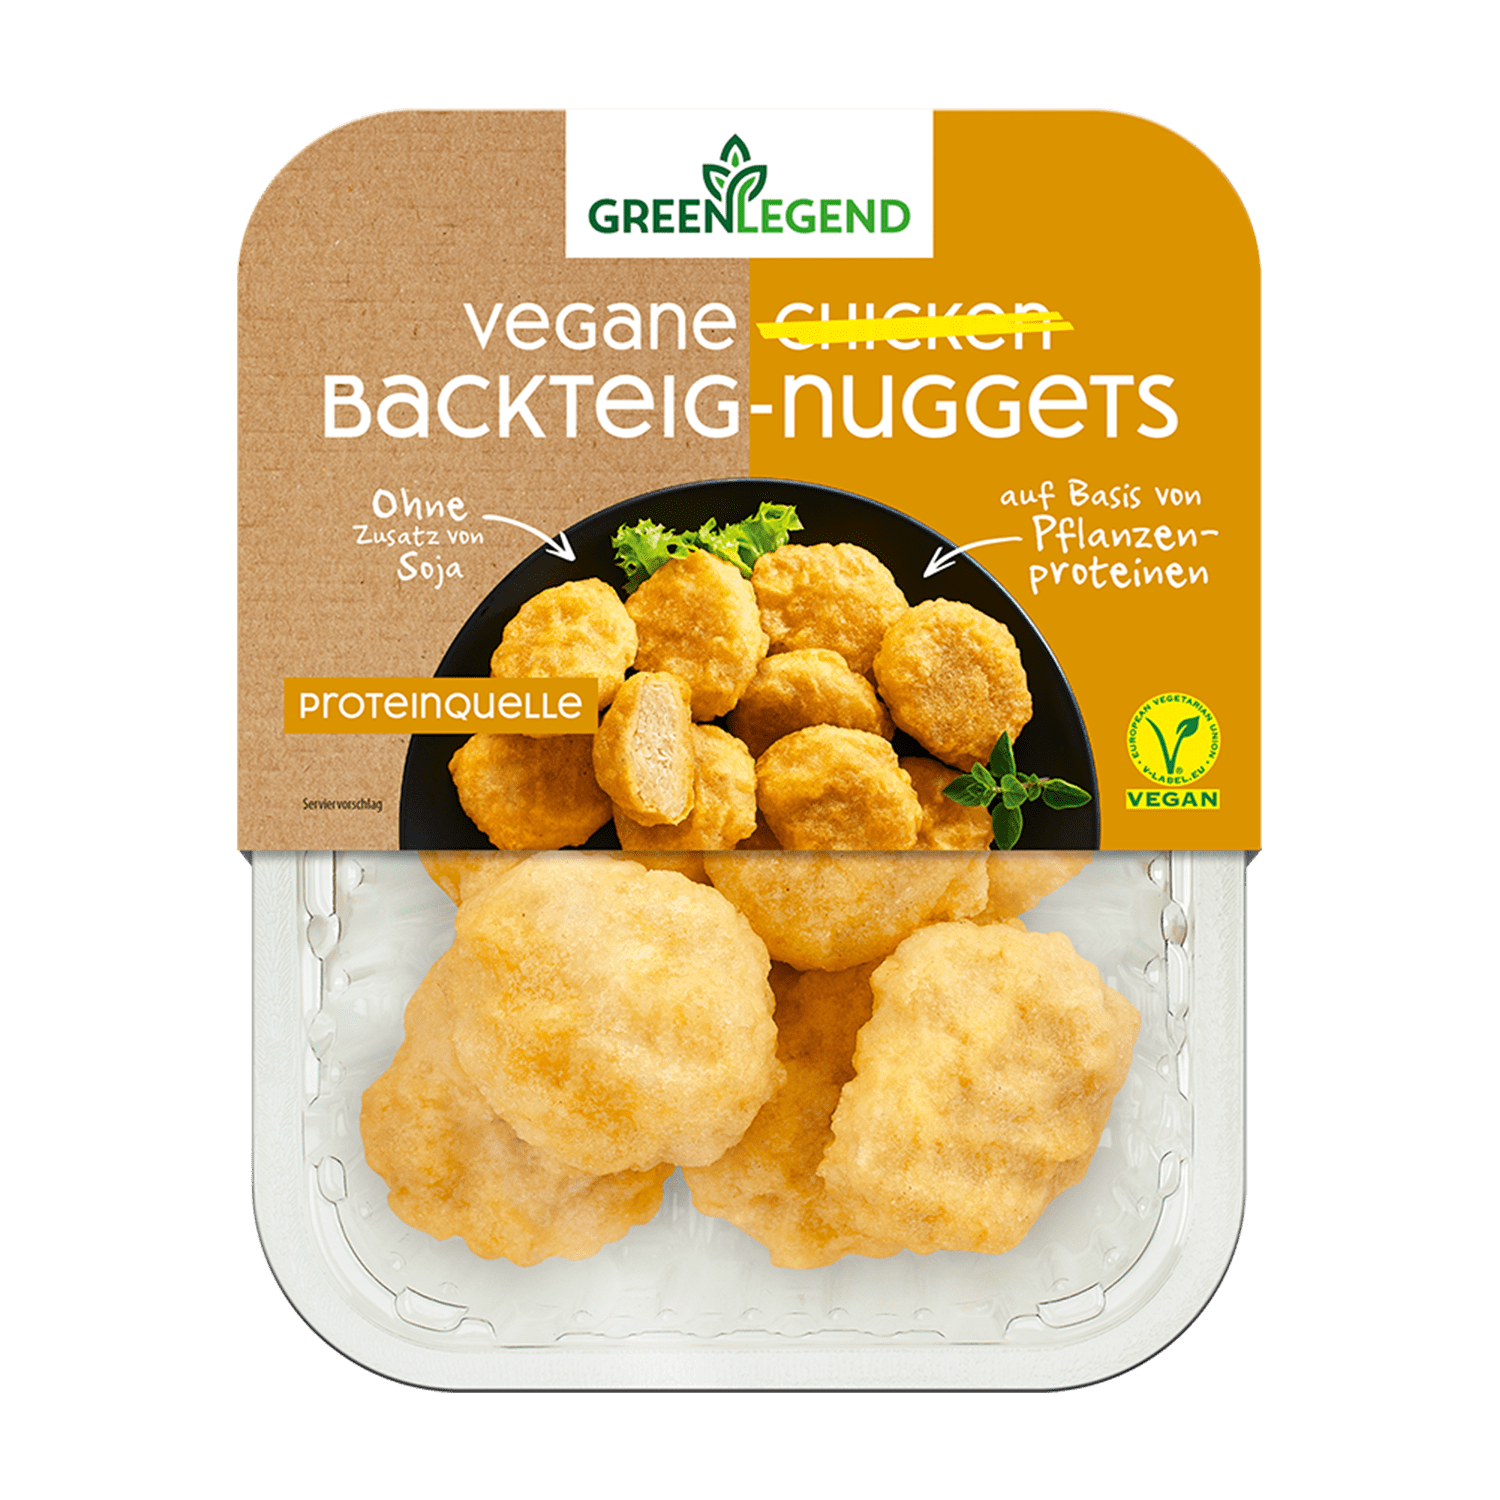 Vegane Chicken Backteig-Nuggets, 180g